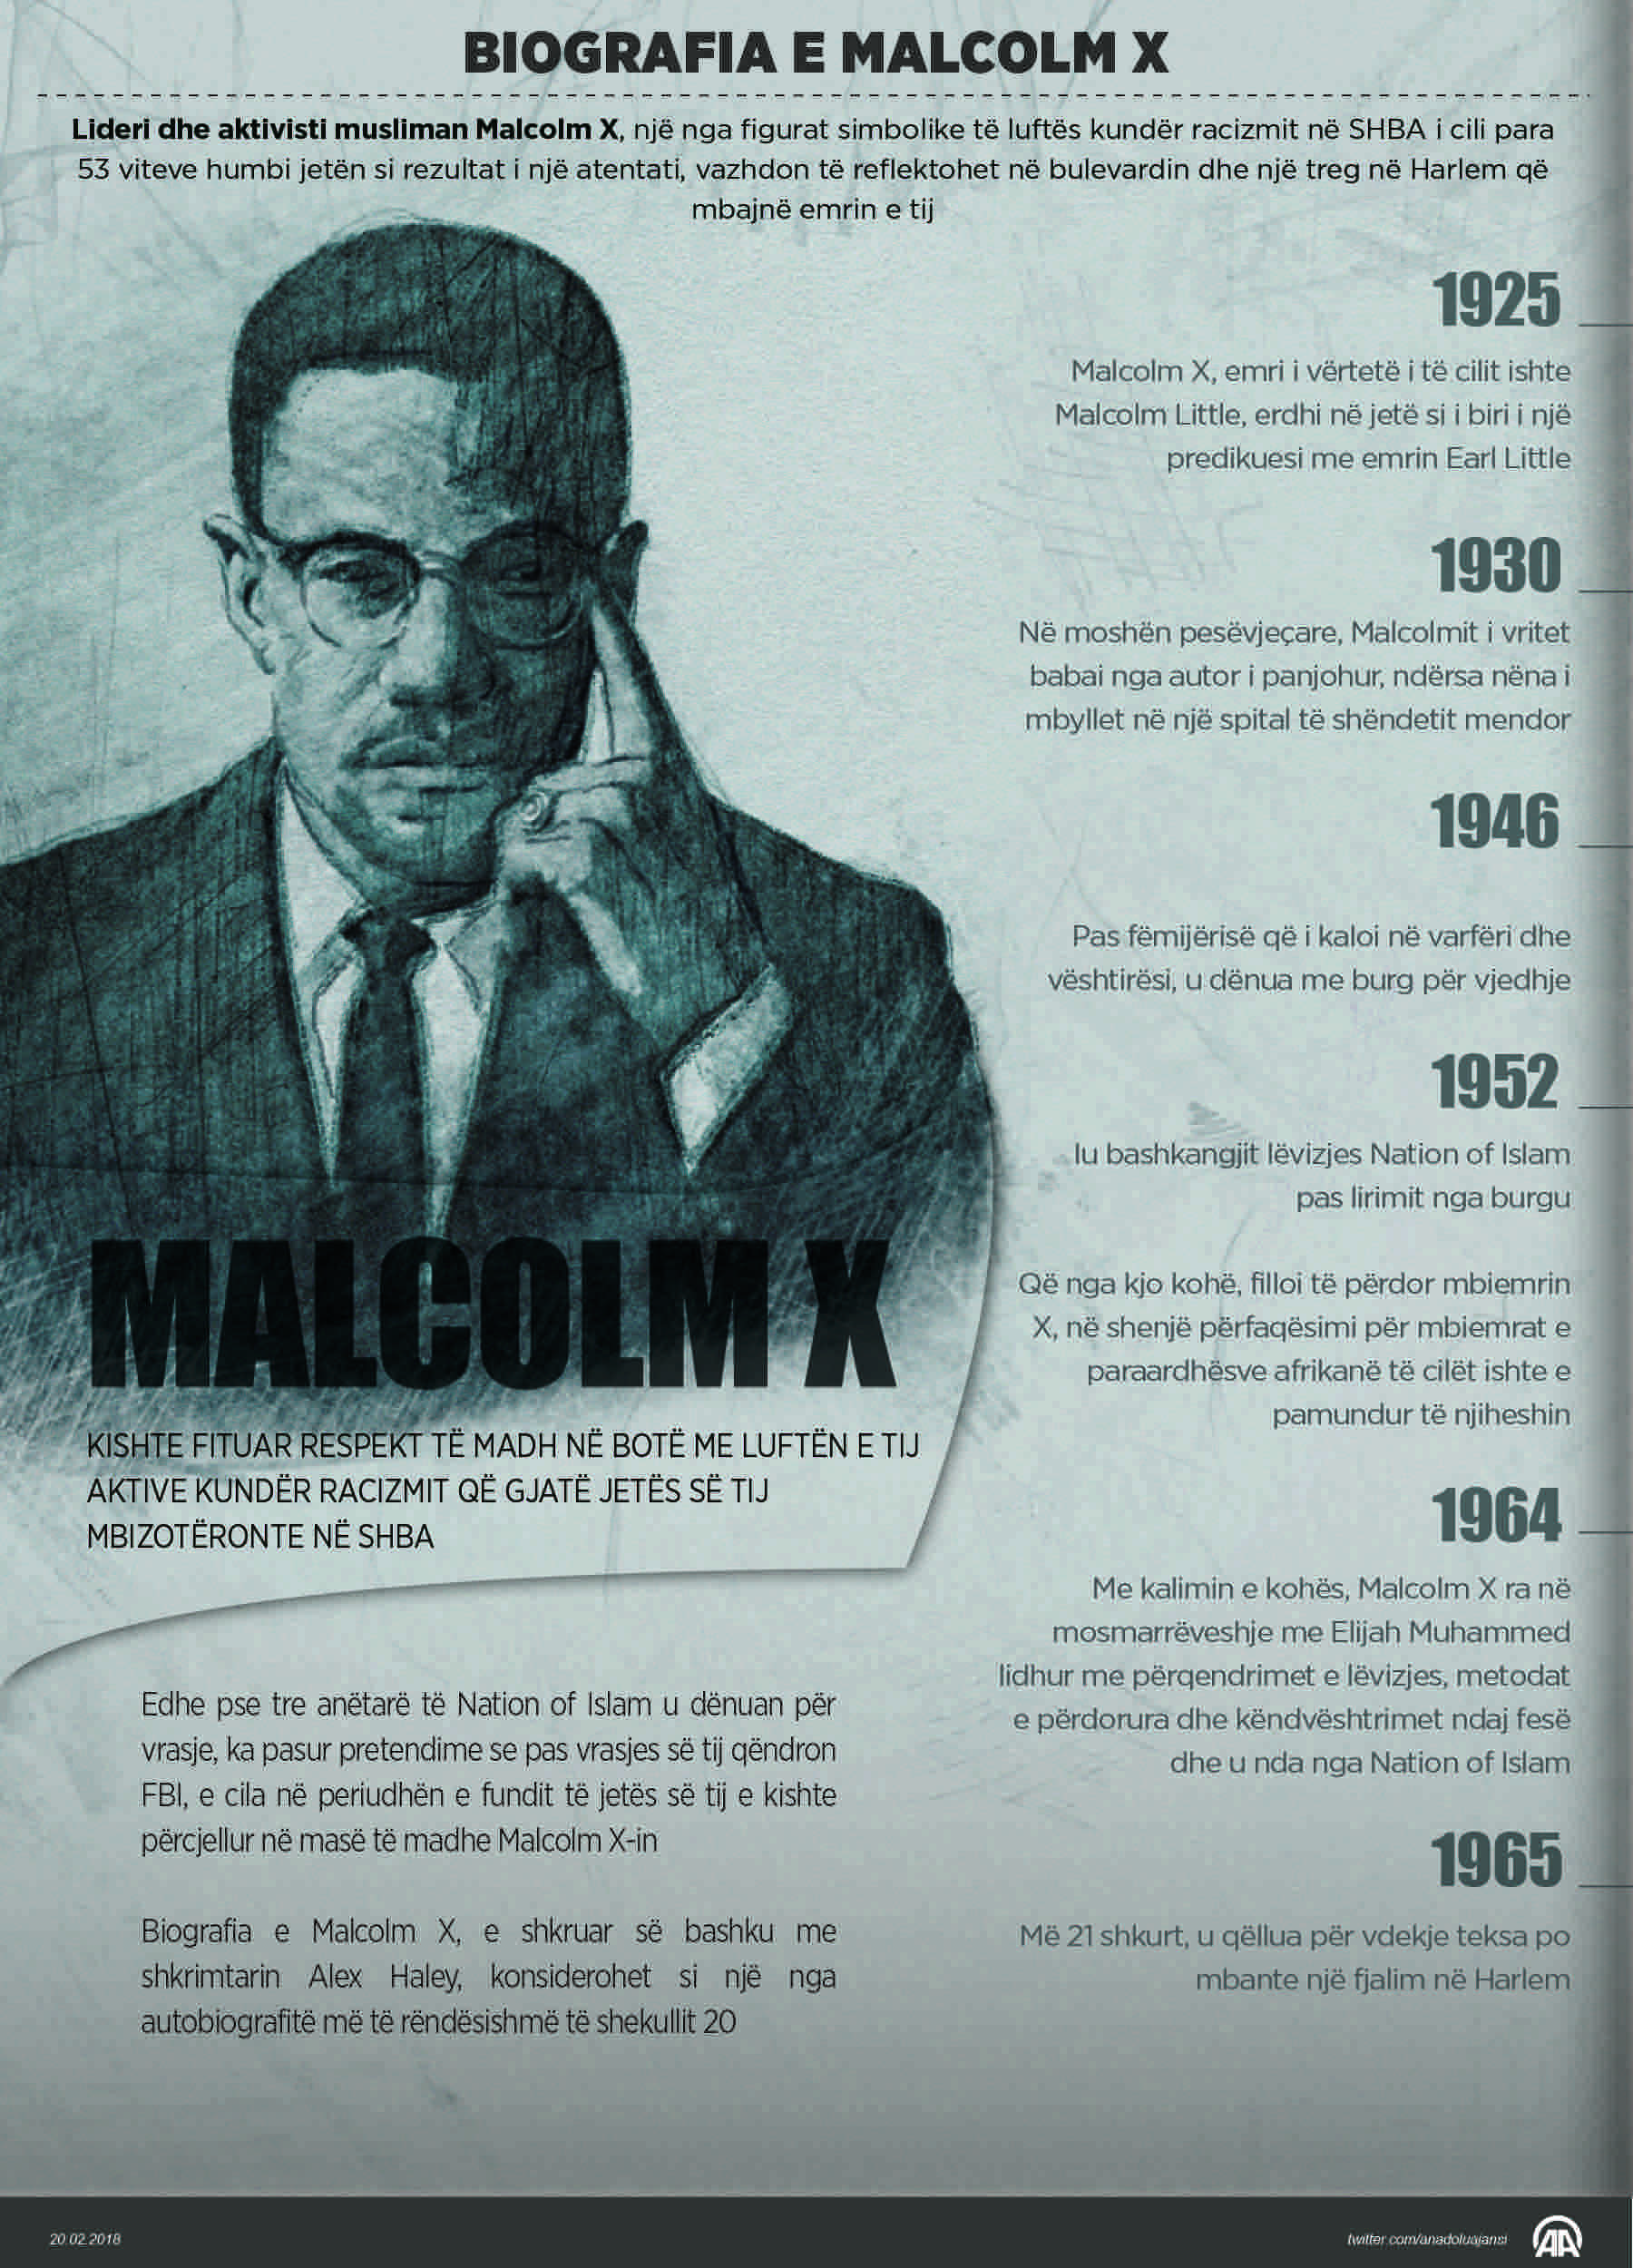 Malcolm X vazhdon të jetë frymëzim për njerëzit